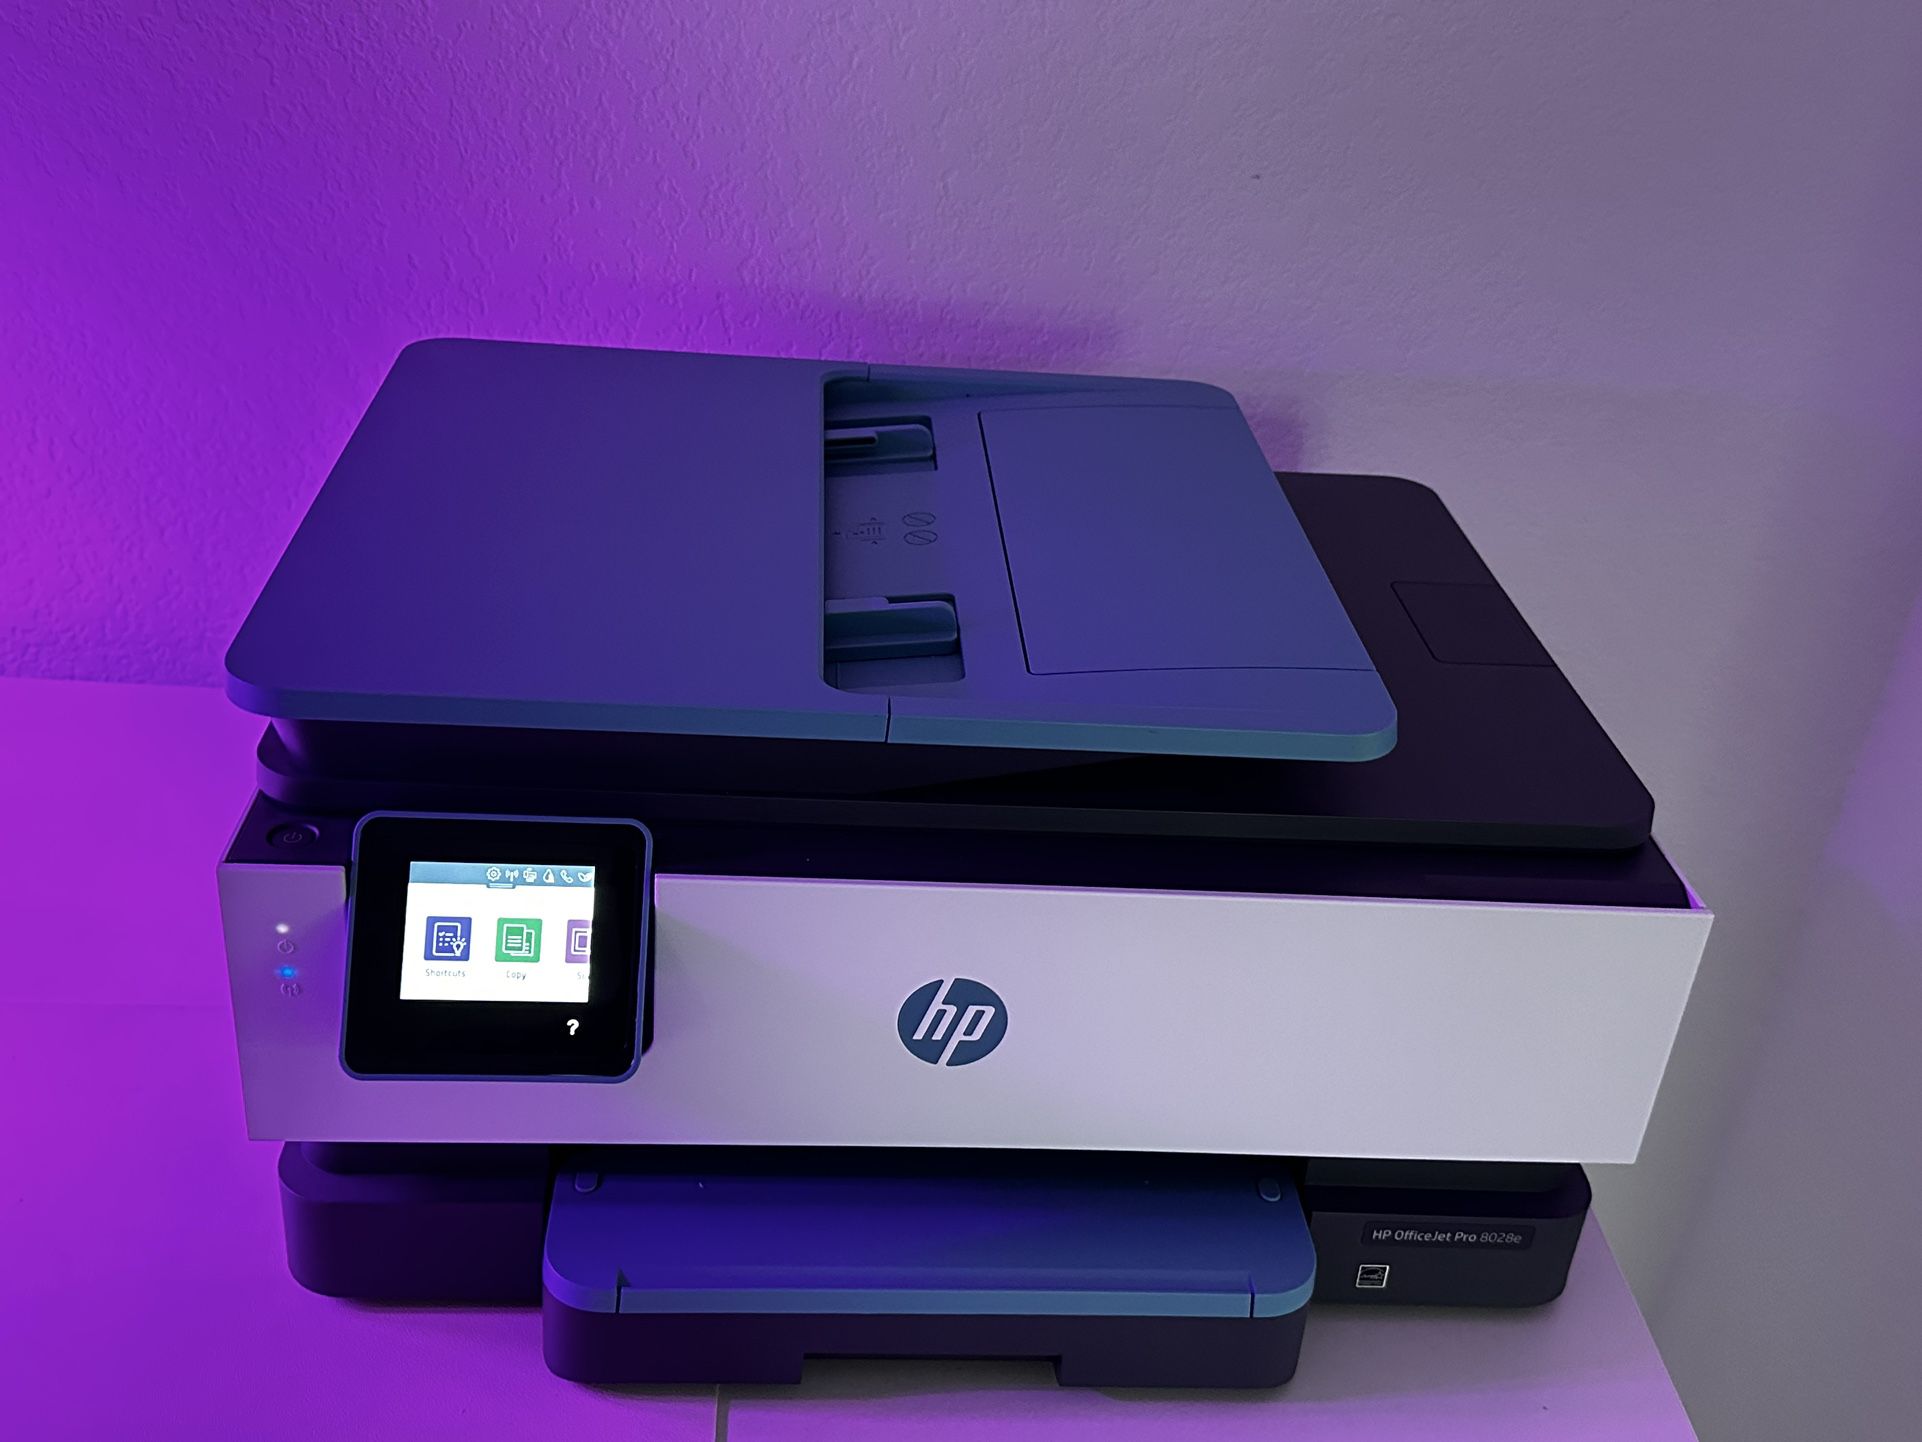 Hp officejet 8028 printer/scanner - like new